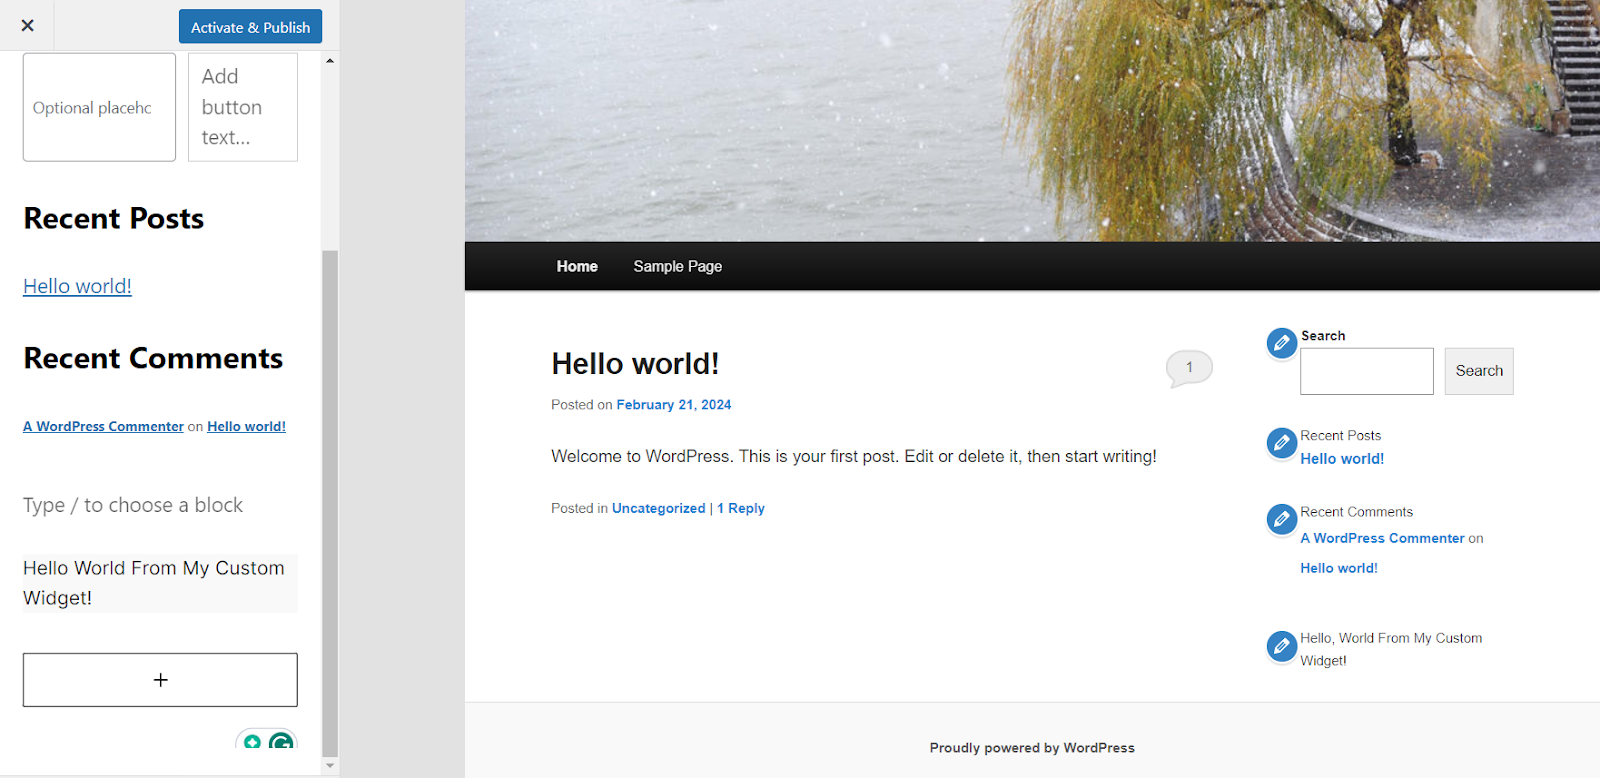 Screenshot van de landingspagina van de WordPress site. De linkerkant van de pagina heeft een menu met recente berichten en recente reacties, met een knop Activeren & Publiceren